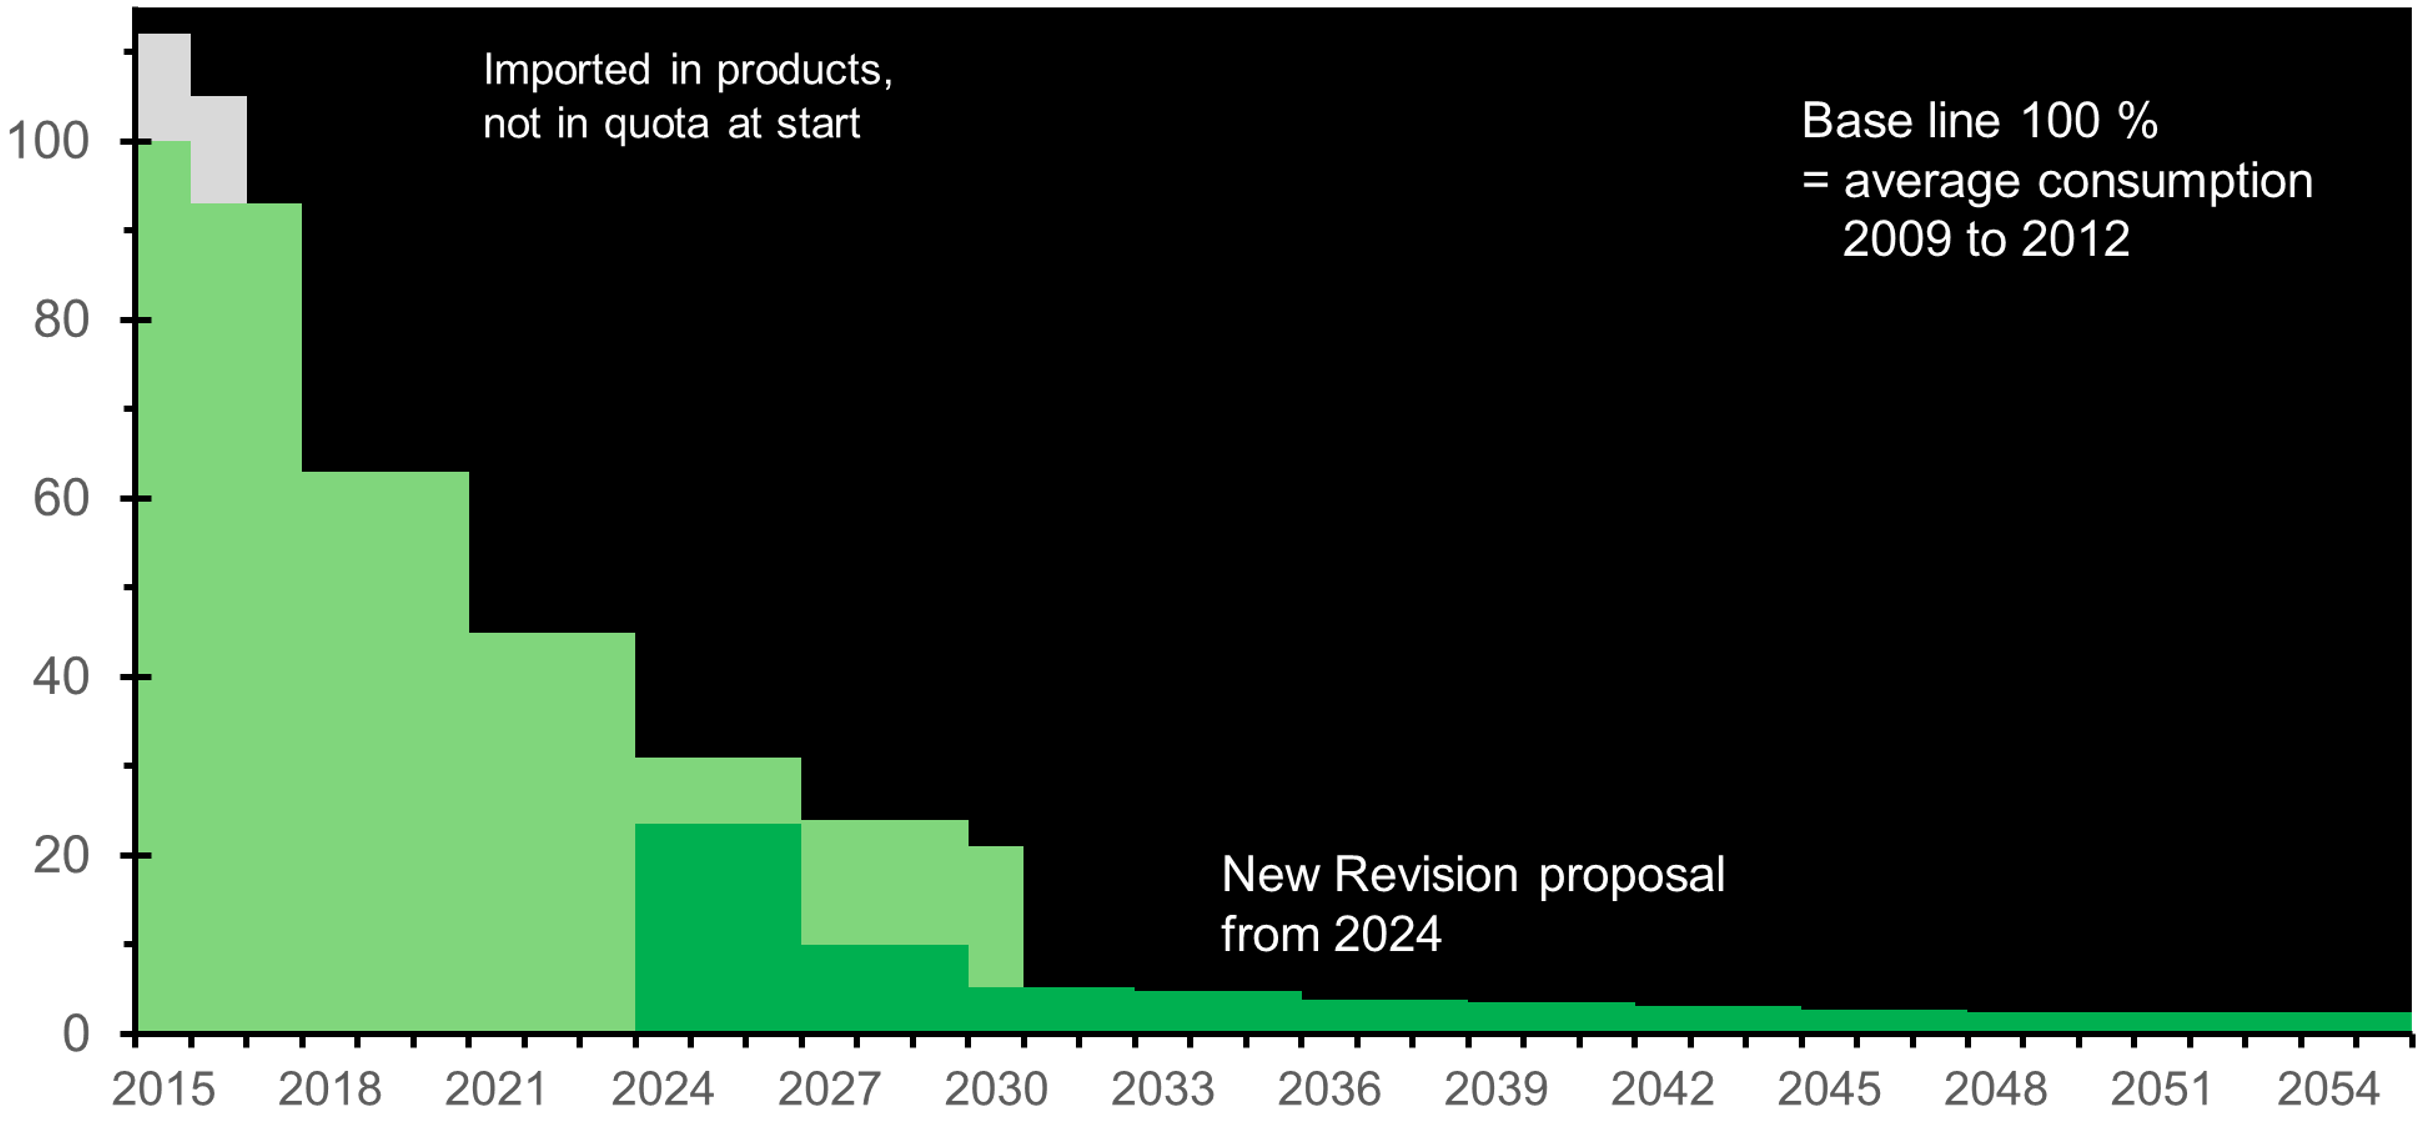 Vergleich der Phase-Down-Stufen in % der Verordnung 517/2014 (in hellgrün), anfangend bei 100% im Jahr 2015, und dem Phase-Down des Entwurfes (in dunkelgrün) ab 2024. In hellgrau: Mengen in importierten Produkten, die in der Grundmenge nicht erfasst waren.